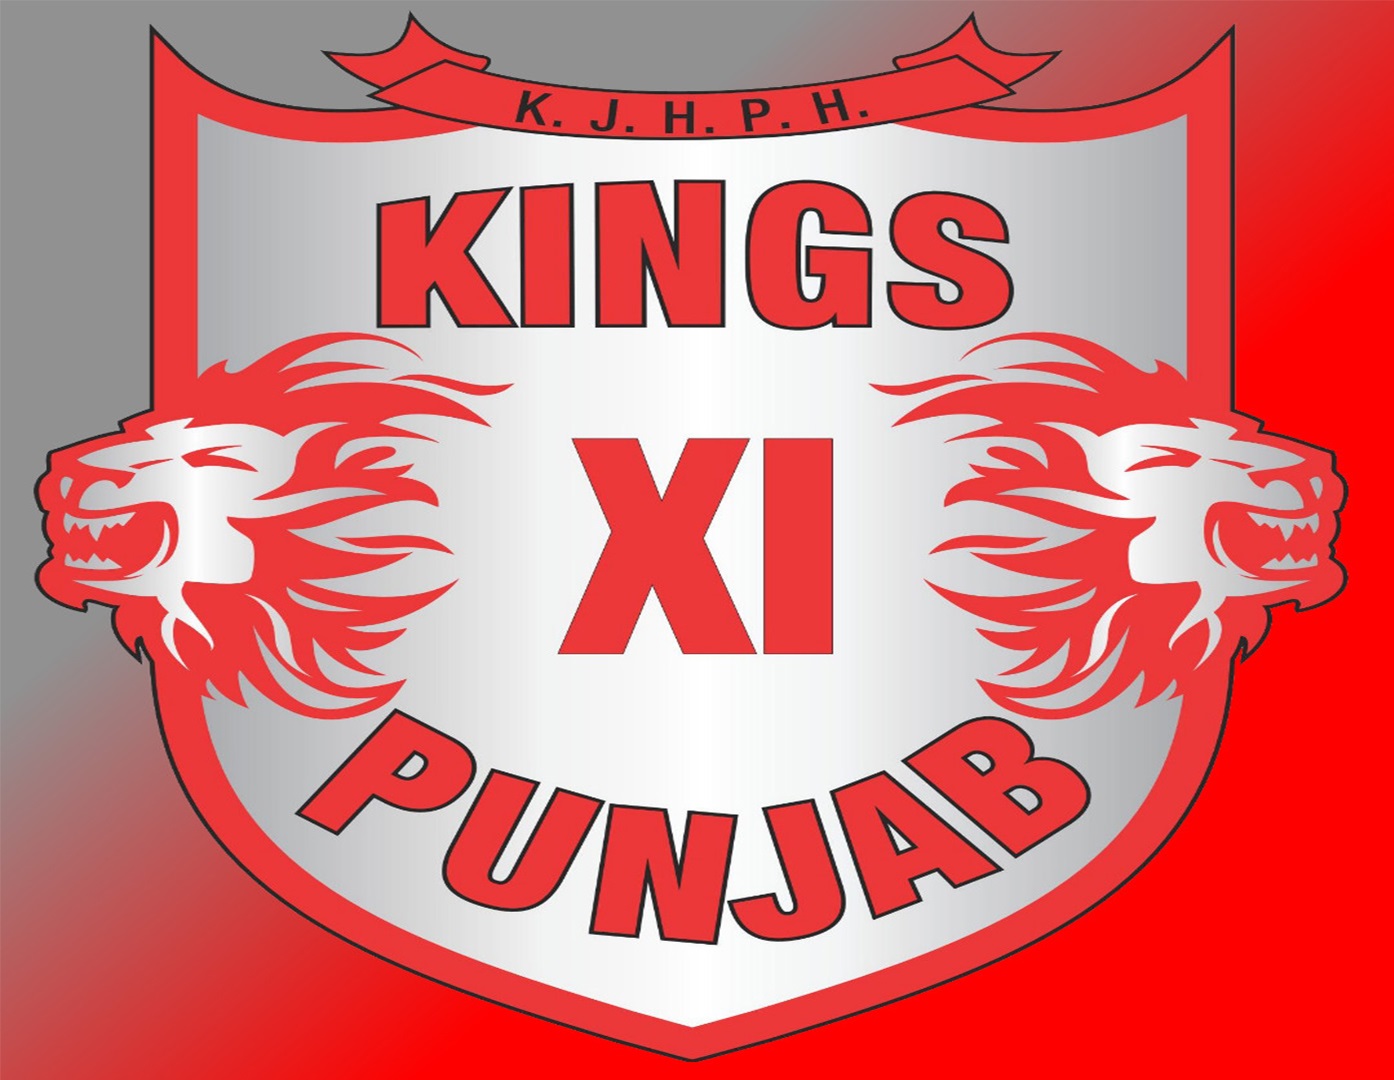 punjab kings hd image 2019